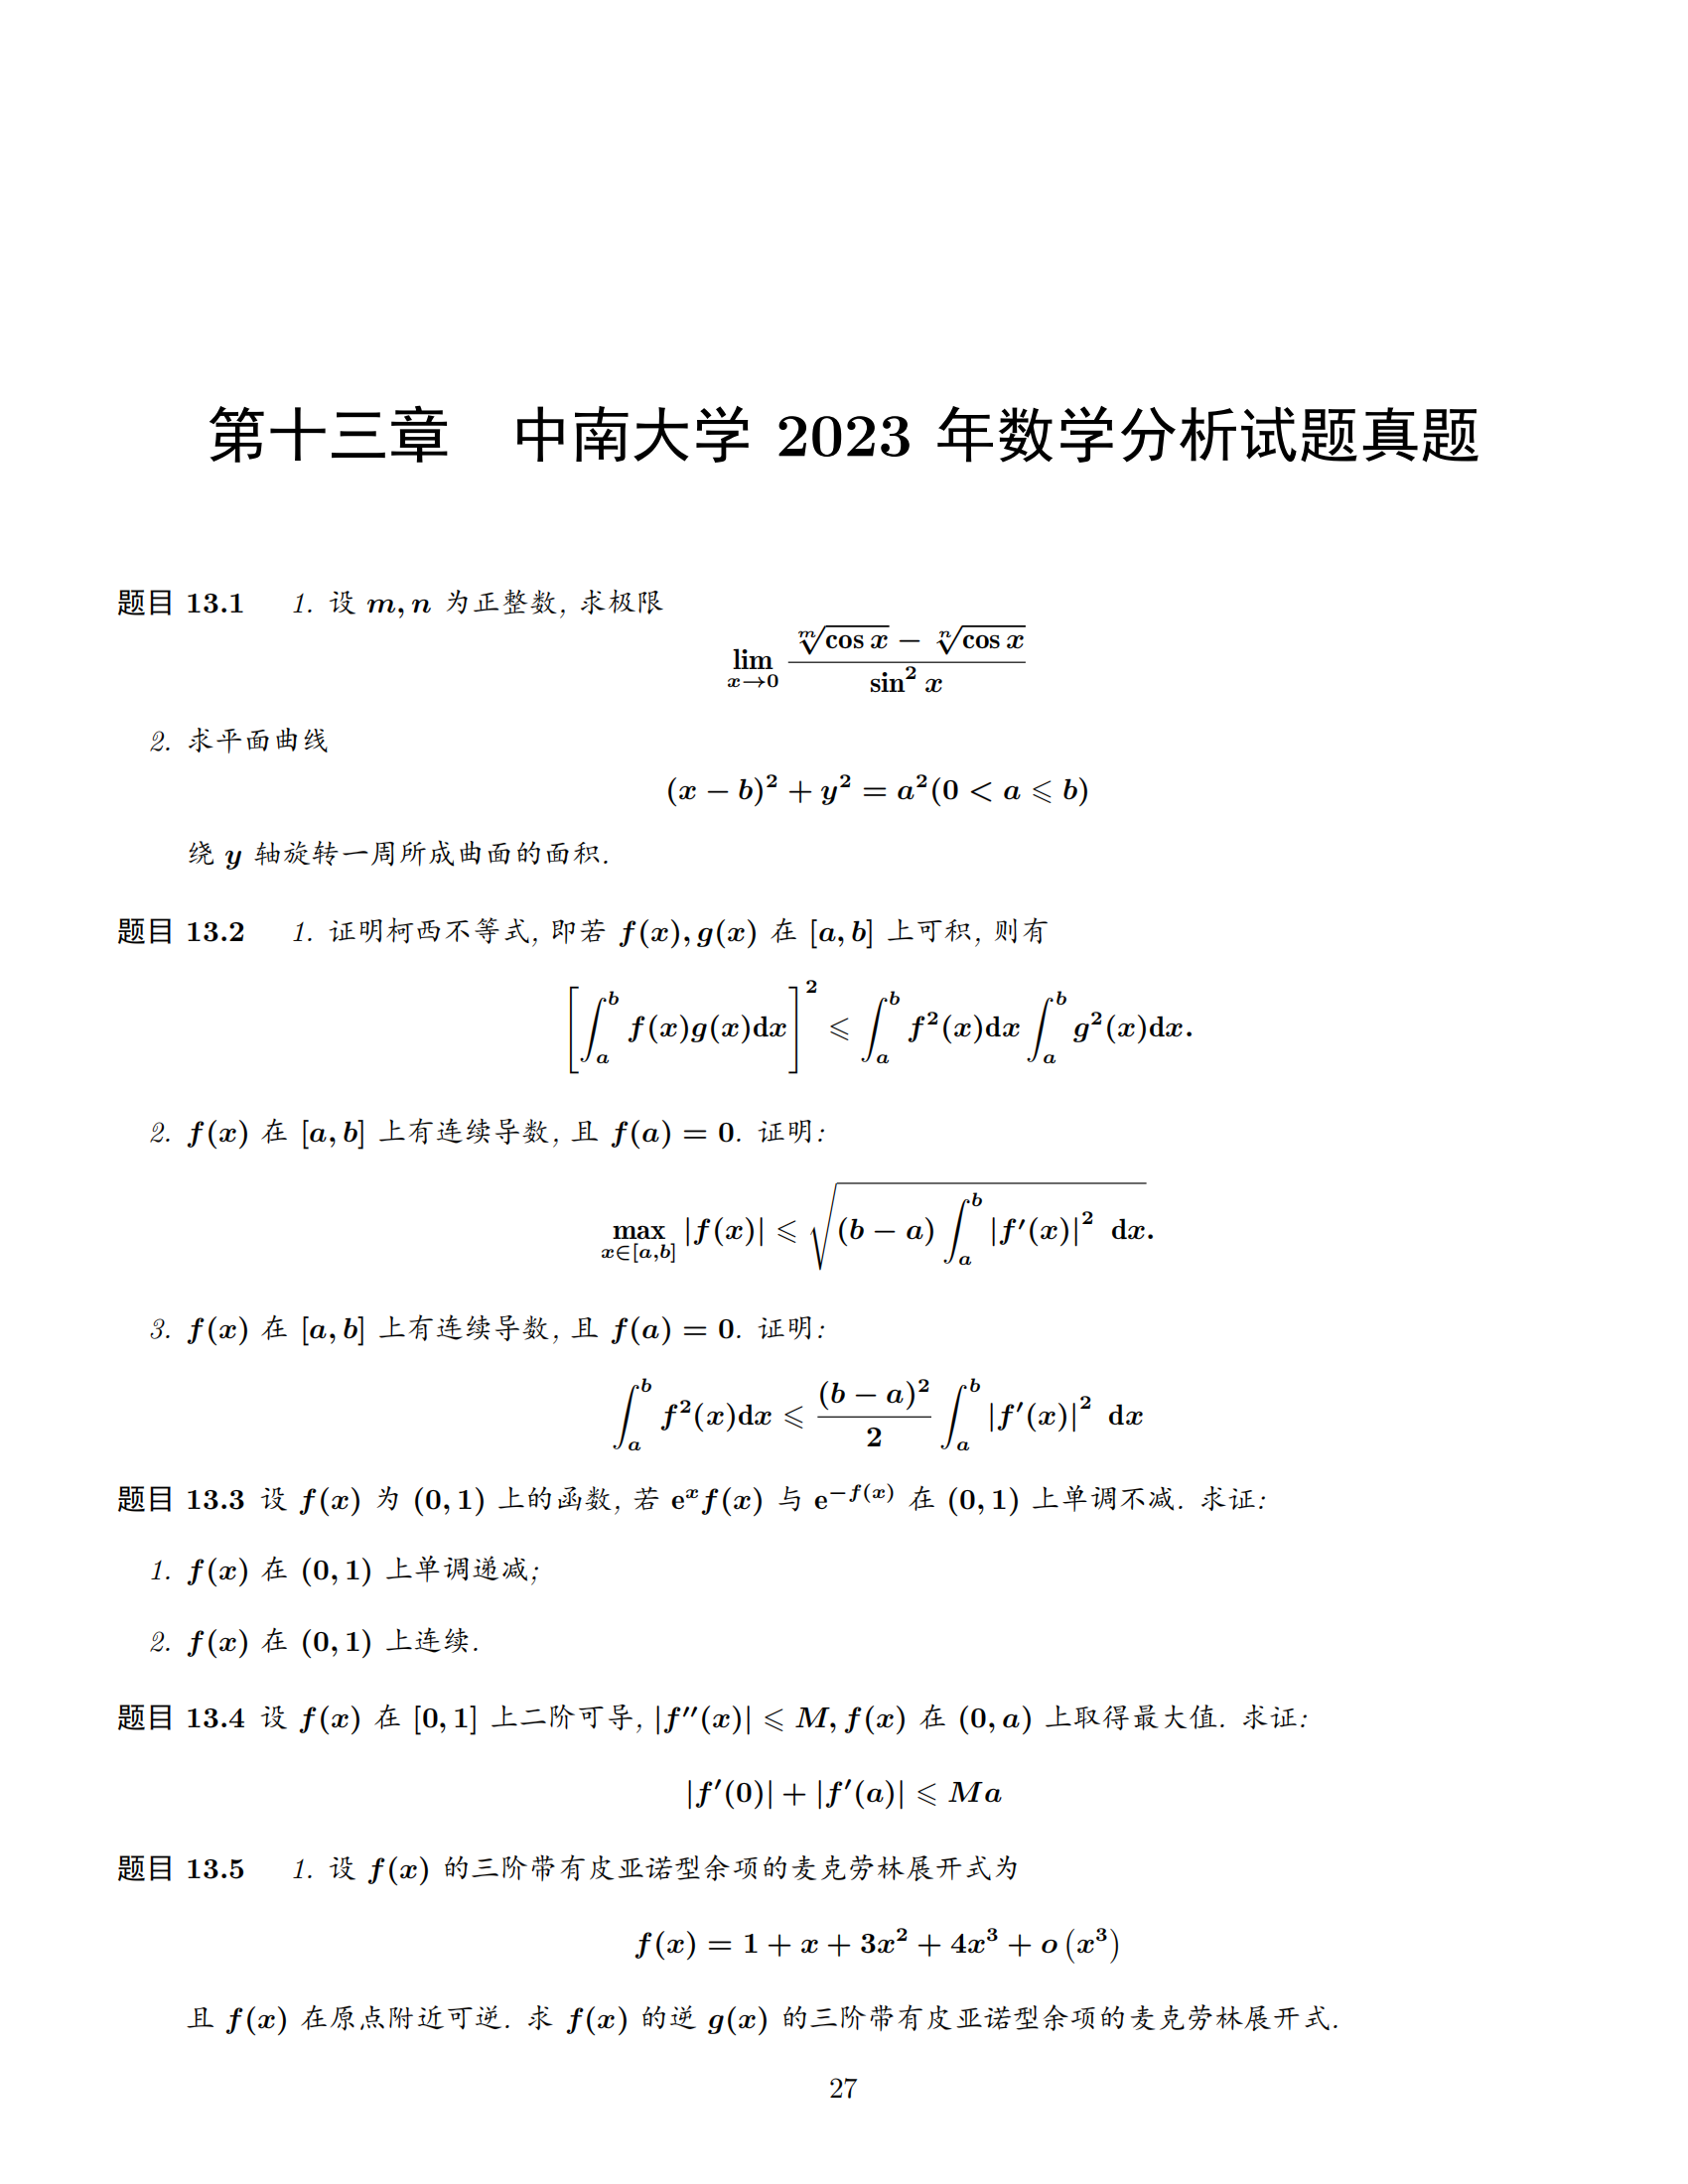 中南大学考研专业课 712《数学分析》历年真题 (2011 年-2023 年)